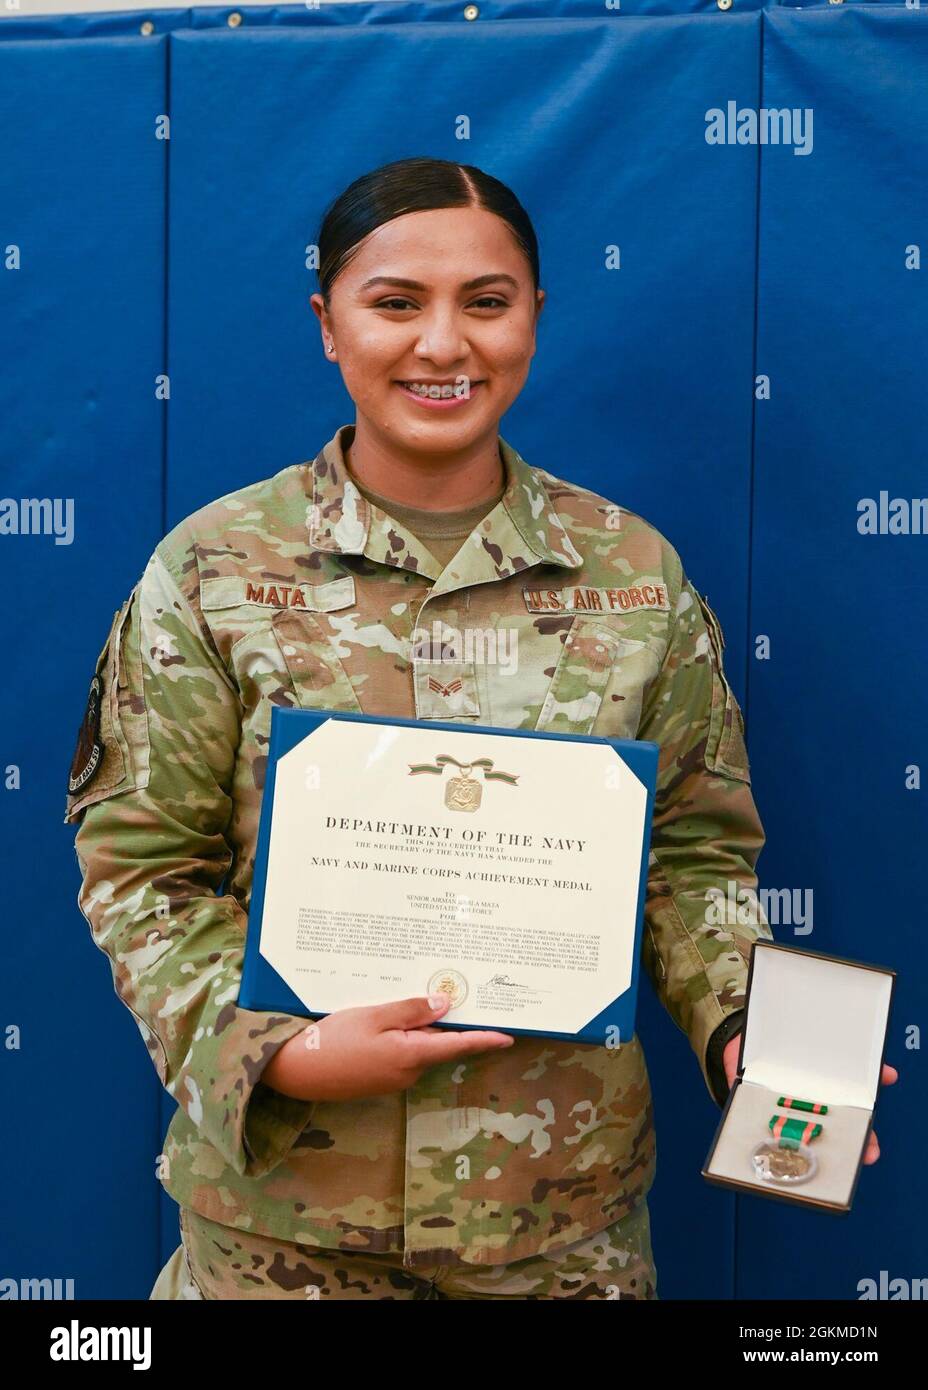 Senior Airman Karla Alejandra Mata, 776th Expeditionary Air base Squadron  Services Airman è stata premiata con la medaglia Navy and Marine Corps  Achievement per i suoi notevoli sforzi mentre si è schierato